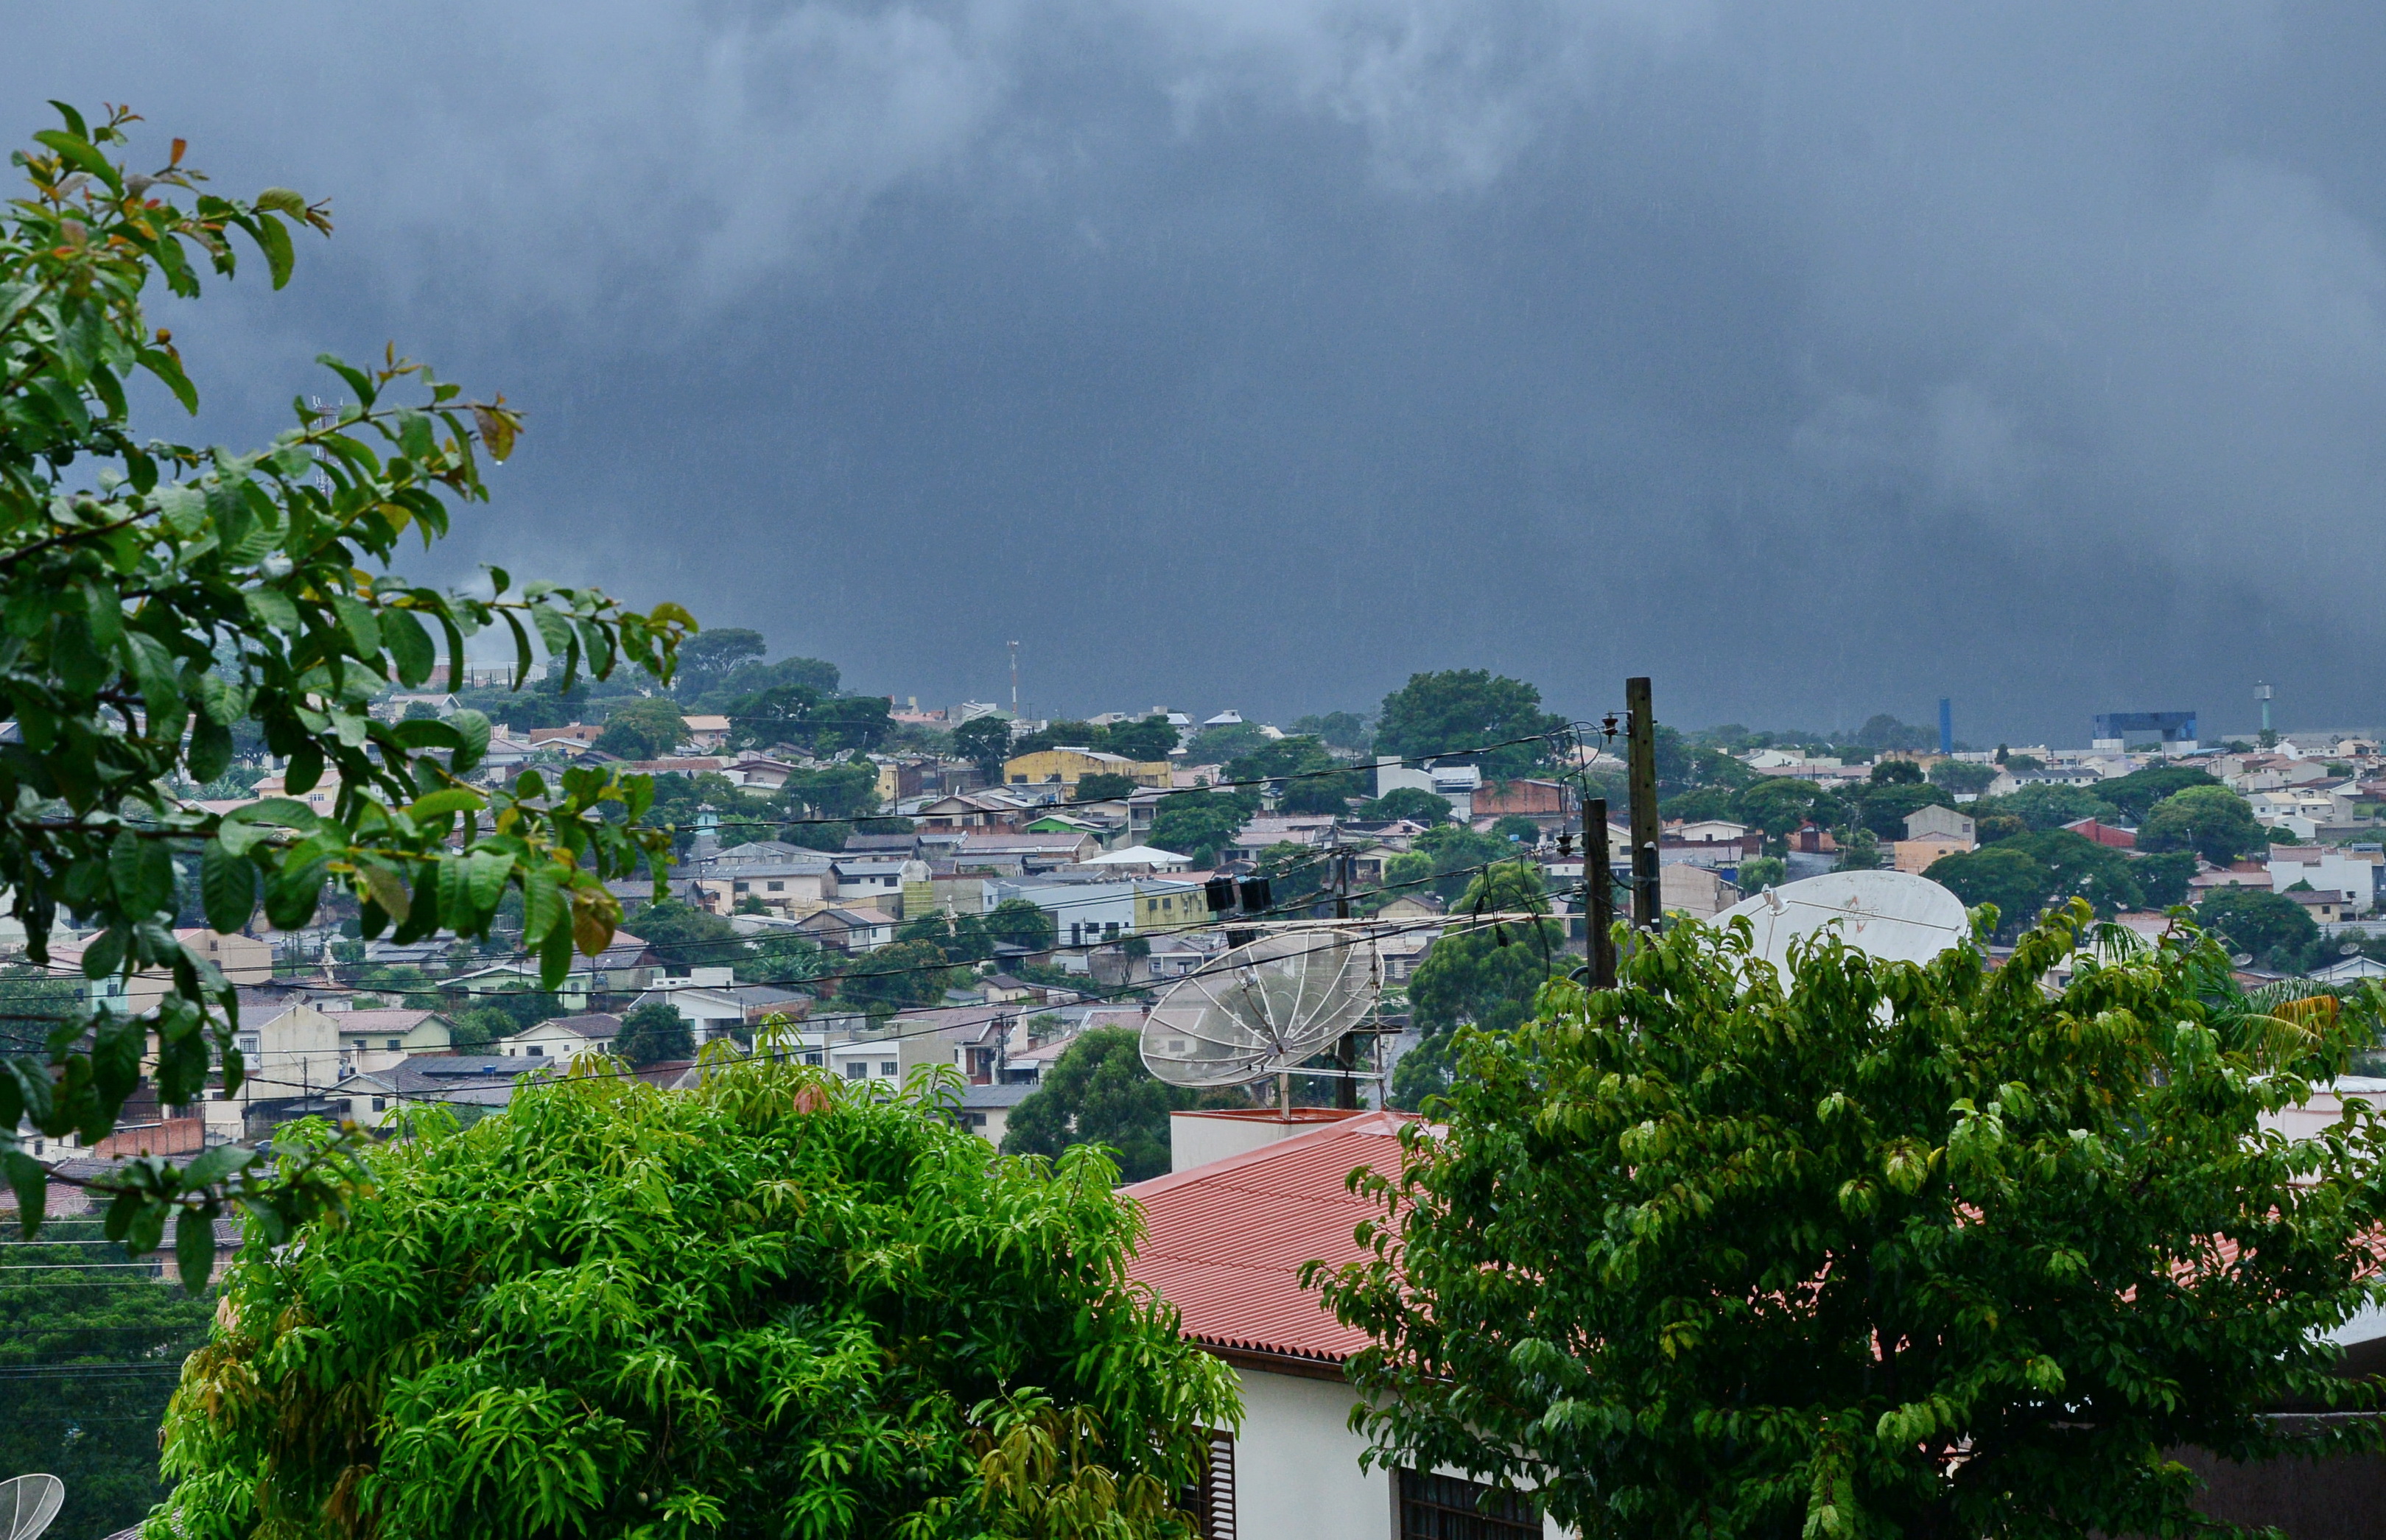 Previsão é de chuva na sexta-feira em Apucarana. Foto: Delair Garcia/Tribuna do Norte